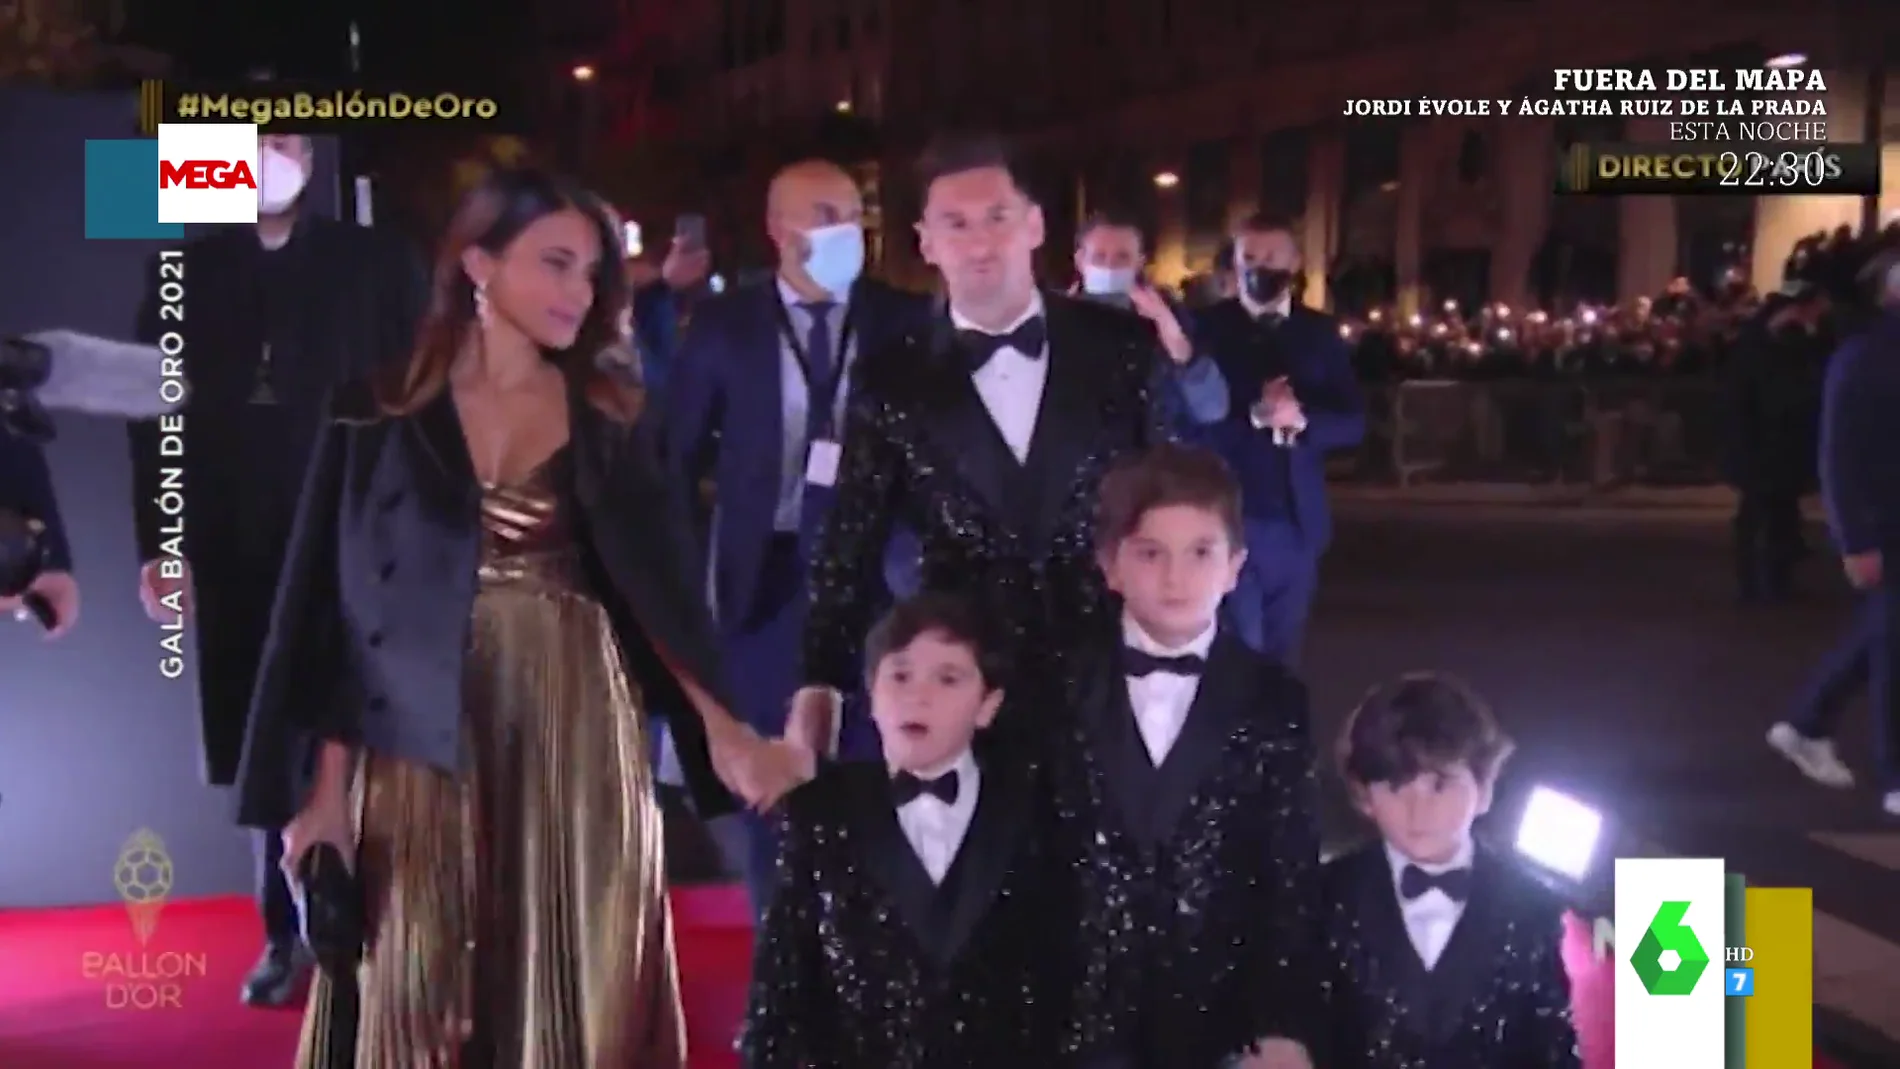 La divertida pulla de Miki Nadal al ver a Messi con sus tres hijos en la gala del Balón de Oro: "Van iguales los cuatro pequeños"